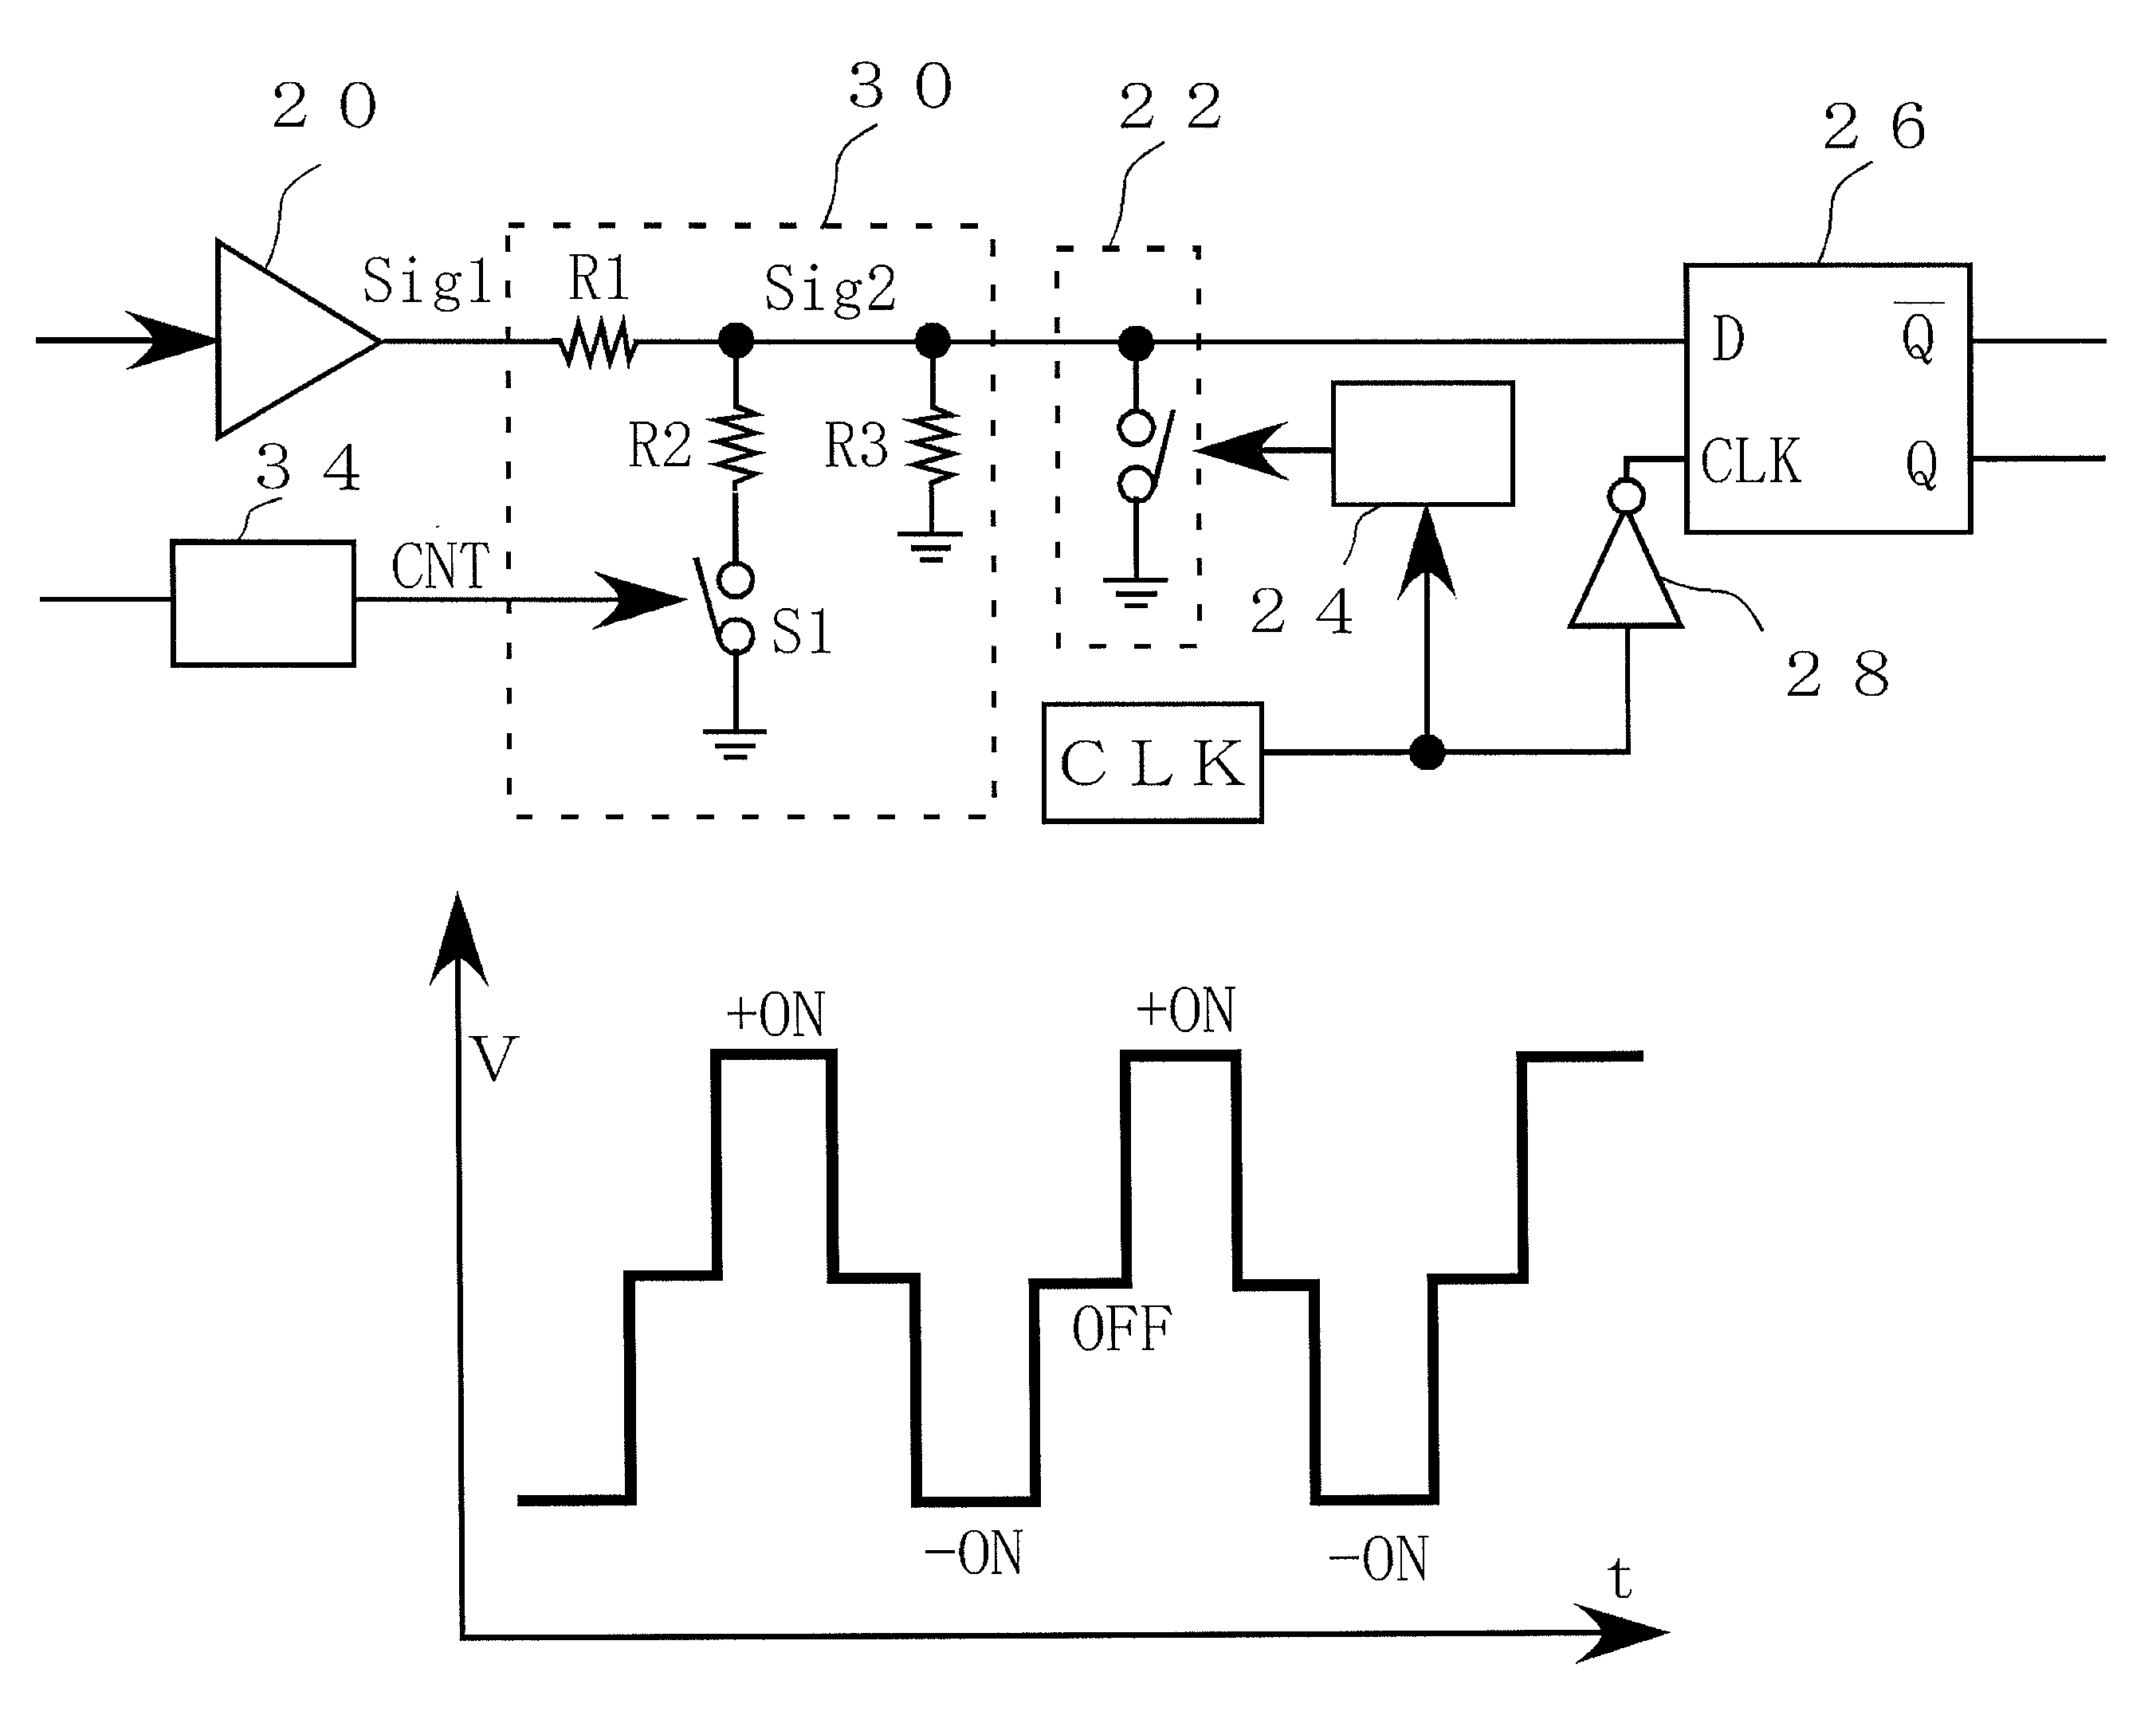 Signal modulation circuit